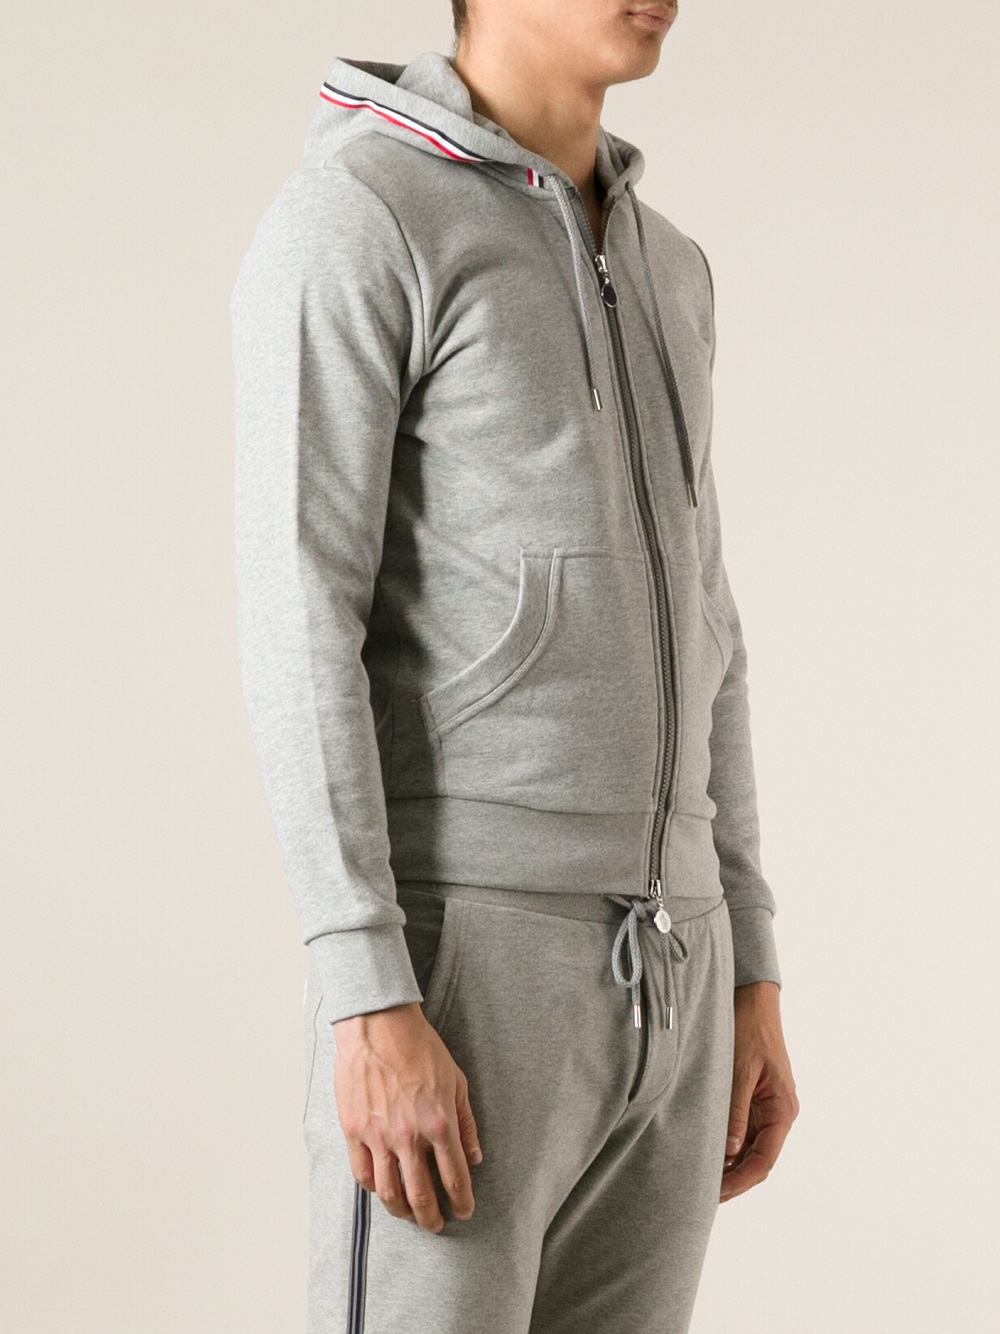 Moncler Zip Front Hoodie in Gray for Men - Lyst